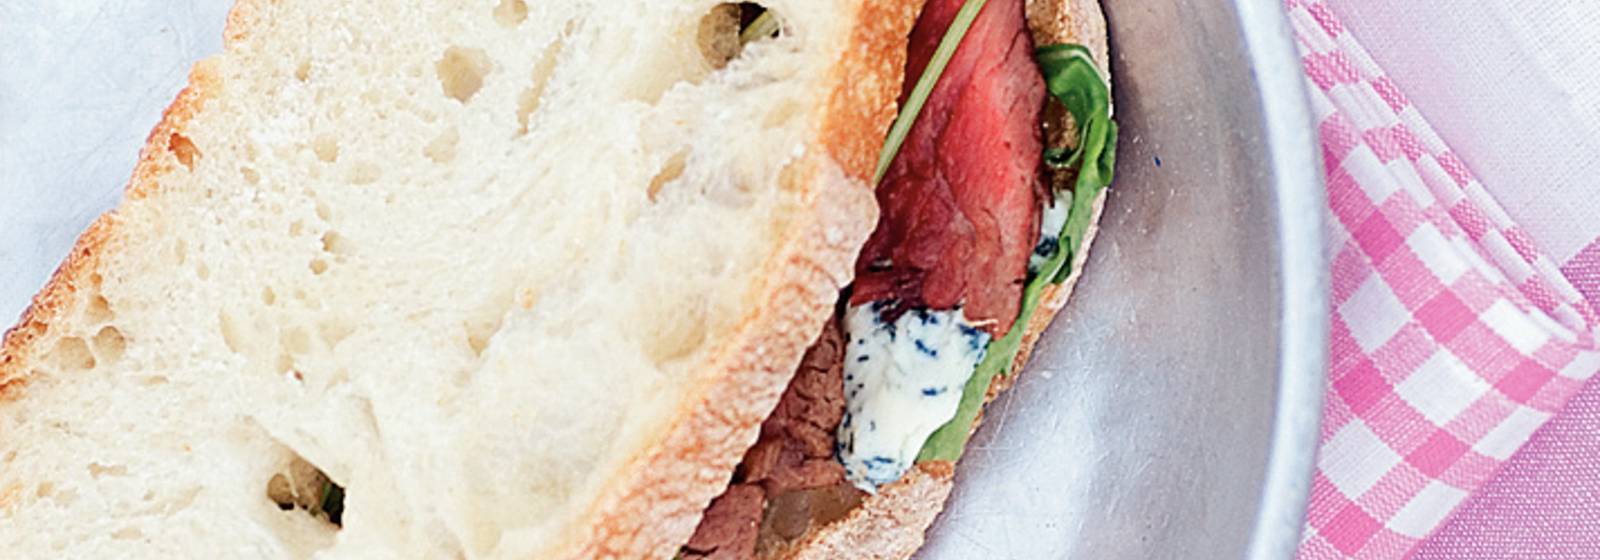 Sandwich mit gegrilltem Rindfleisch und Blauschimmelkäse - Tag Rezepte